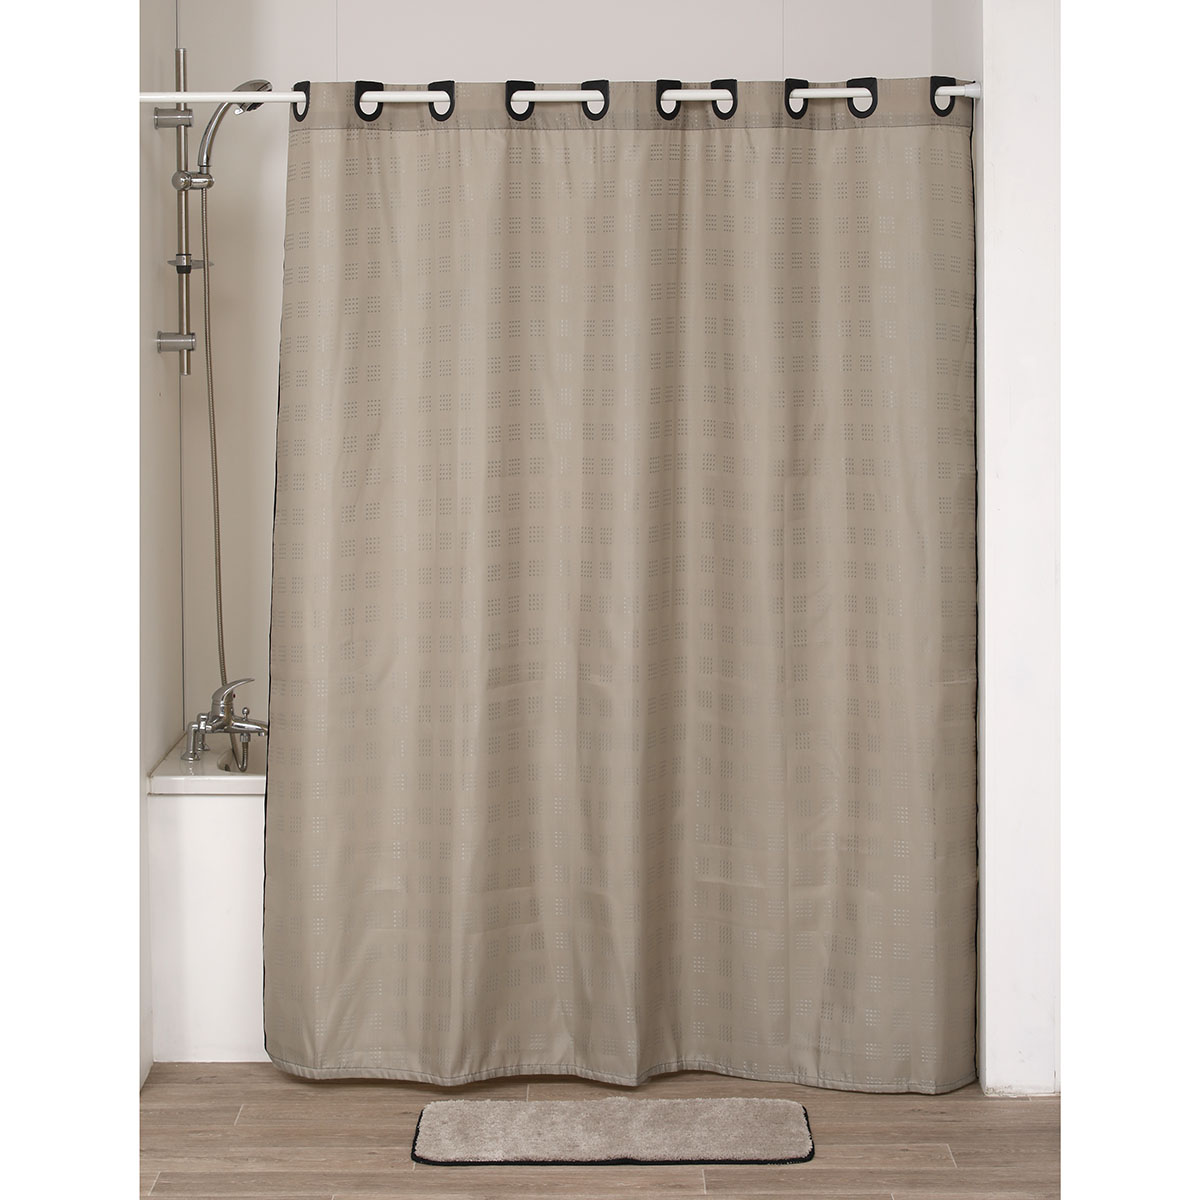 Anillas para cortinas de ducha